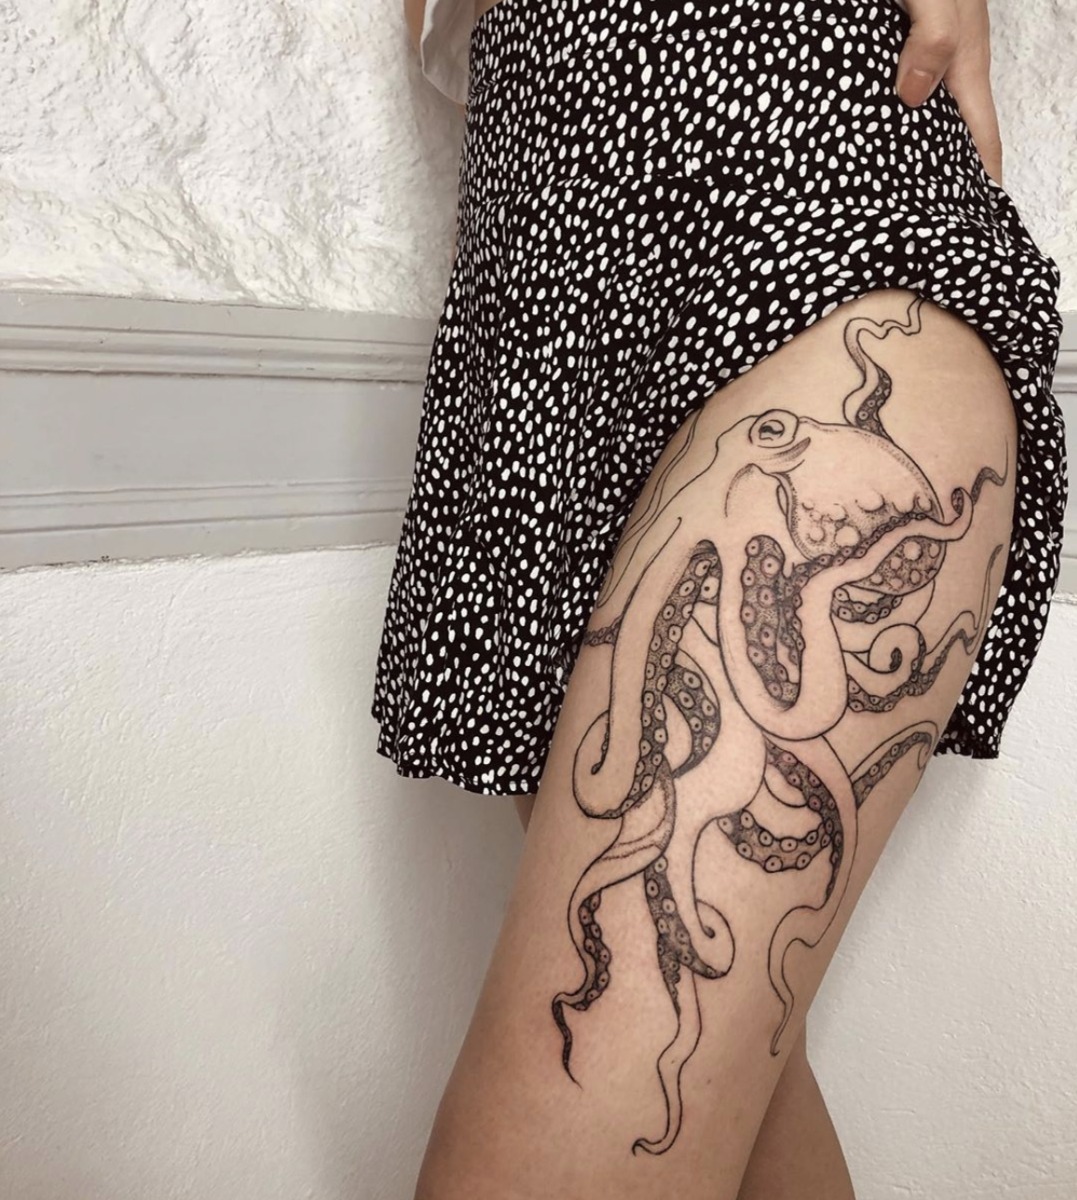 Octopus tattoo by Özge Canoğlu @ozgecanoglu on Instagram